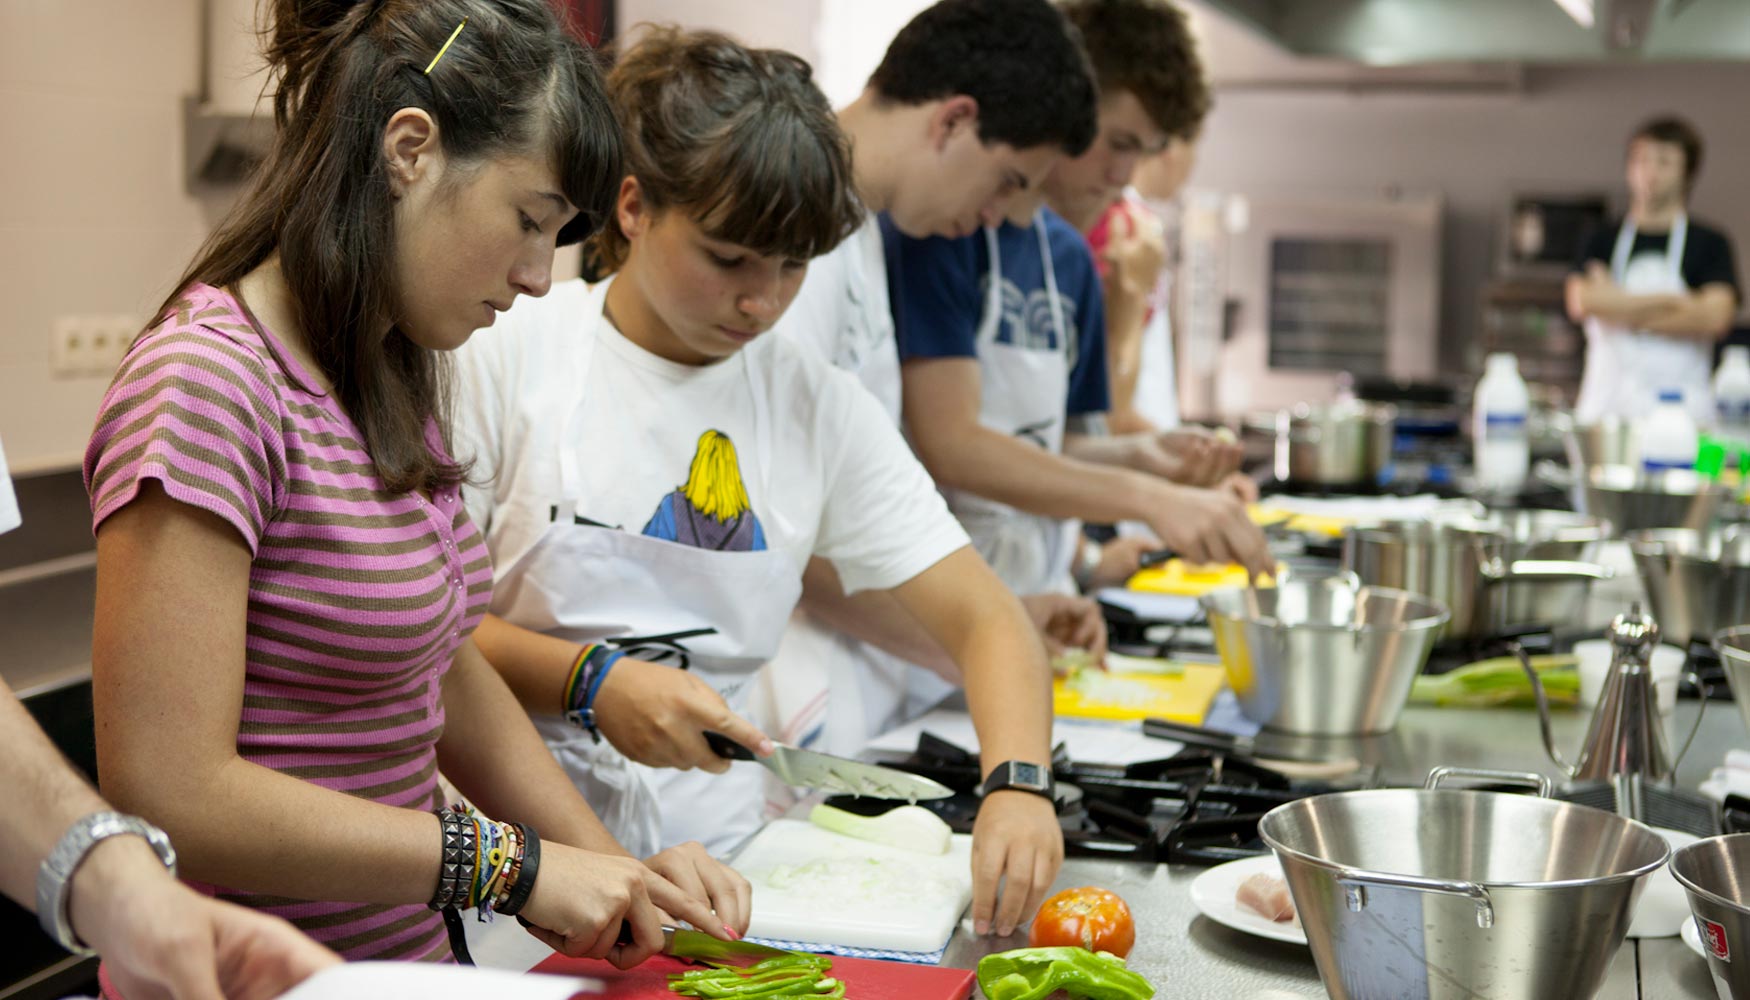 San Sebastián 2016 y Basque Culinary Center organizan un certamen de cocina  para jóvenes - Hostelería, restauración y comercio